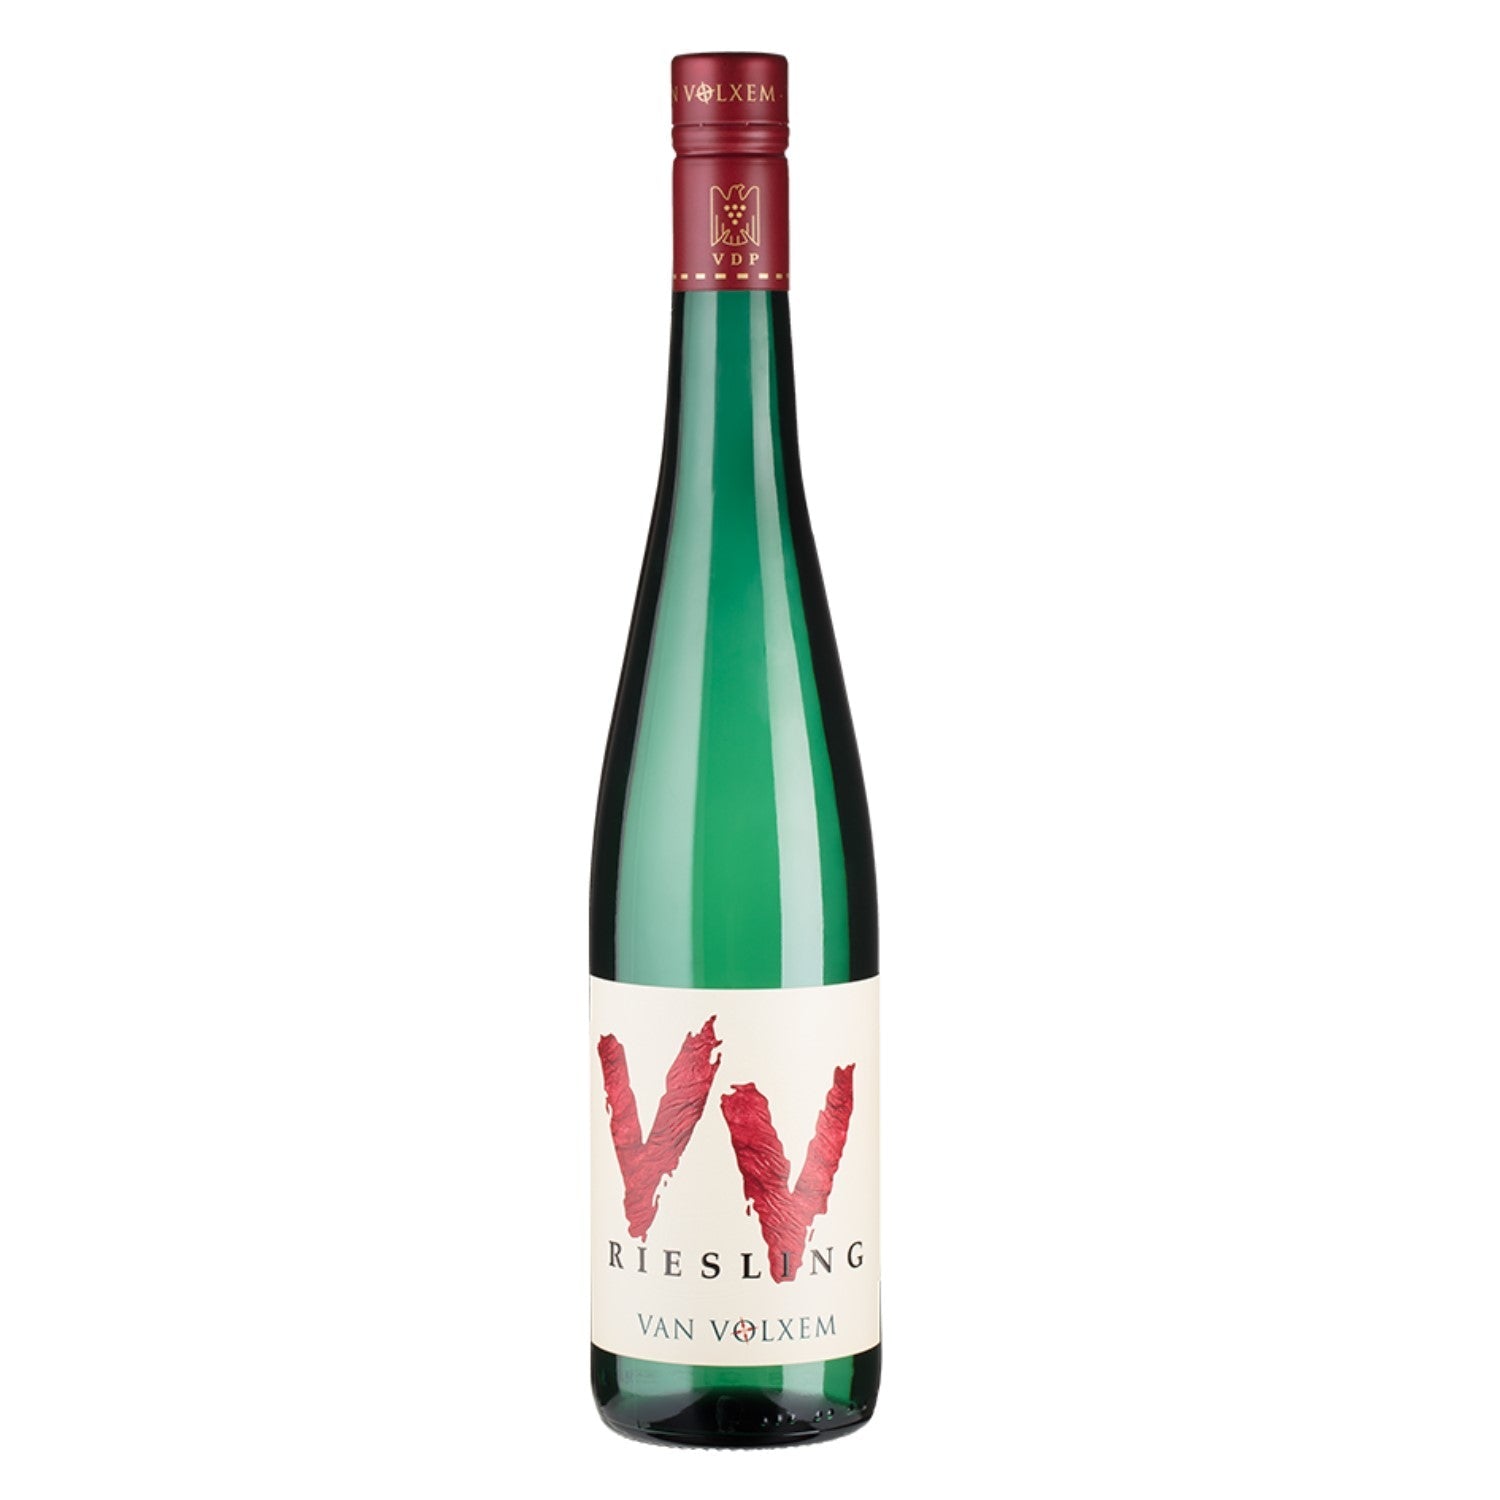 Van Volxem Riesling VV Weißwein deutscher Wein trocken (6 x 0.75l) - Versanel -